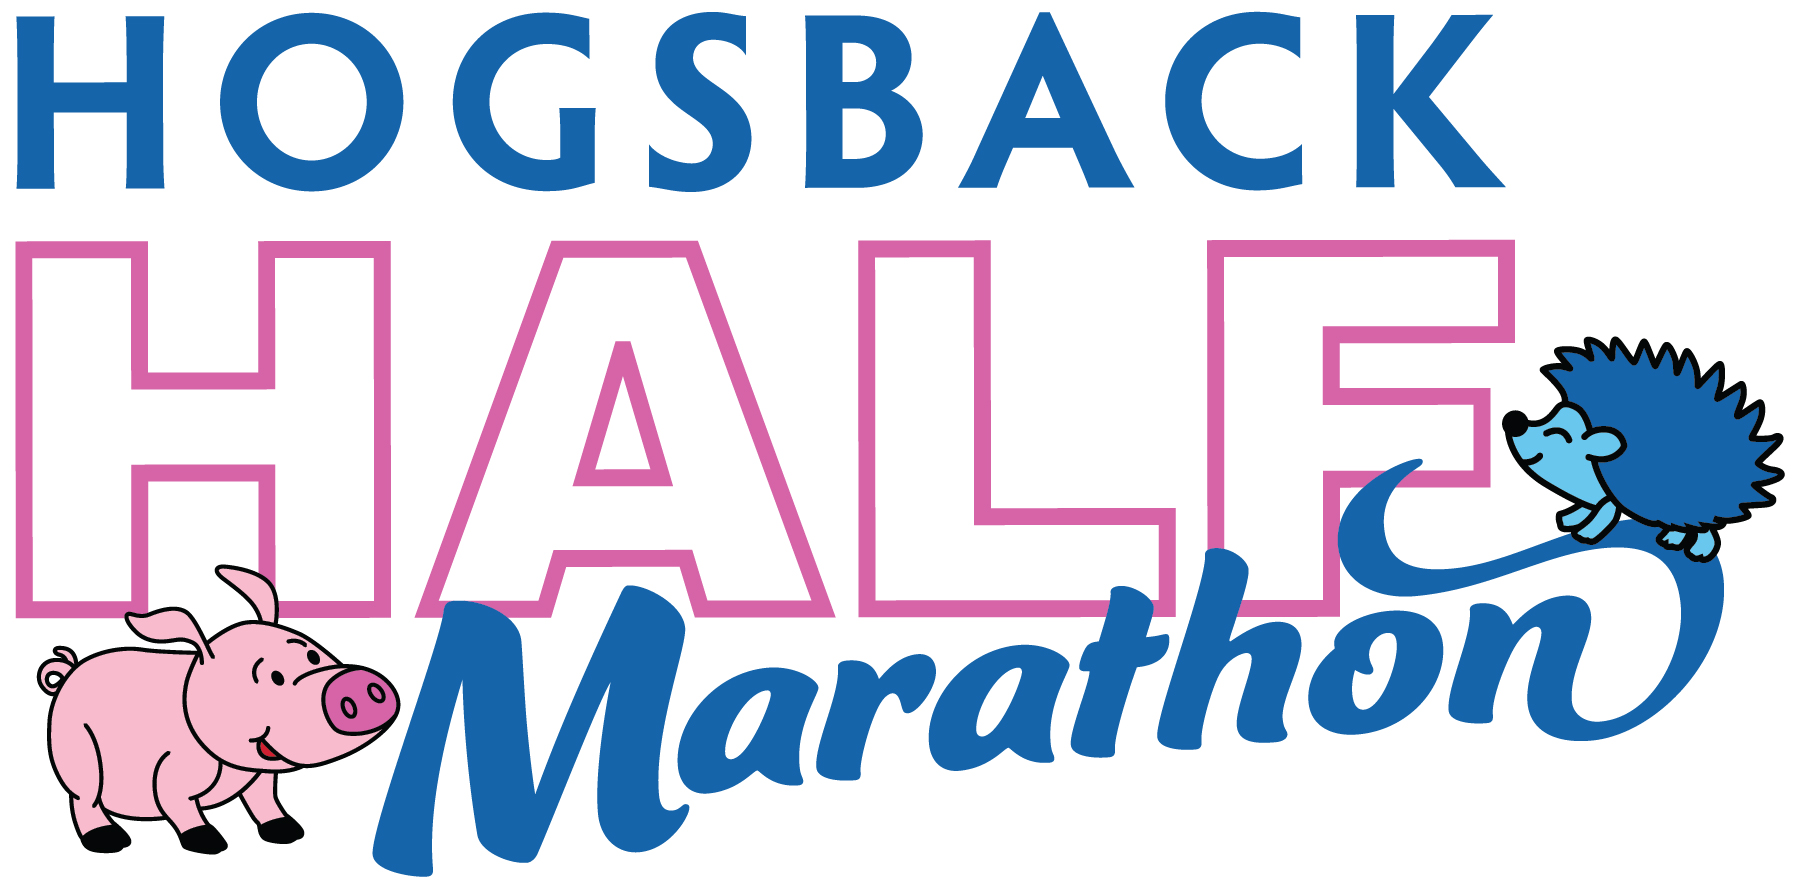 Hogsback Half Marathon logo on RaceRaves